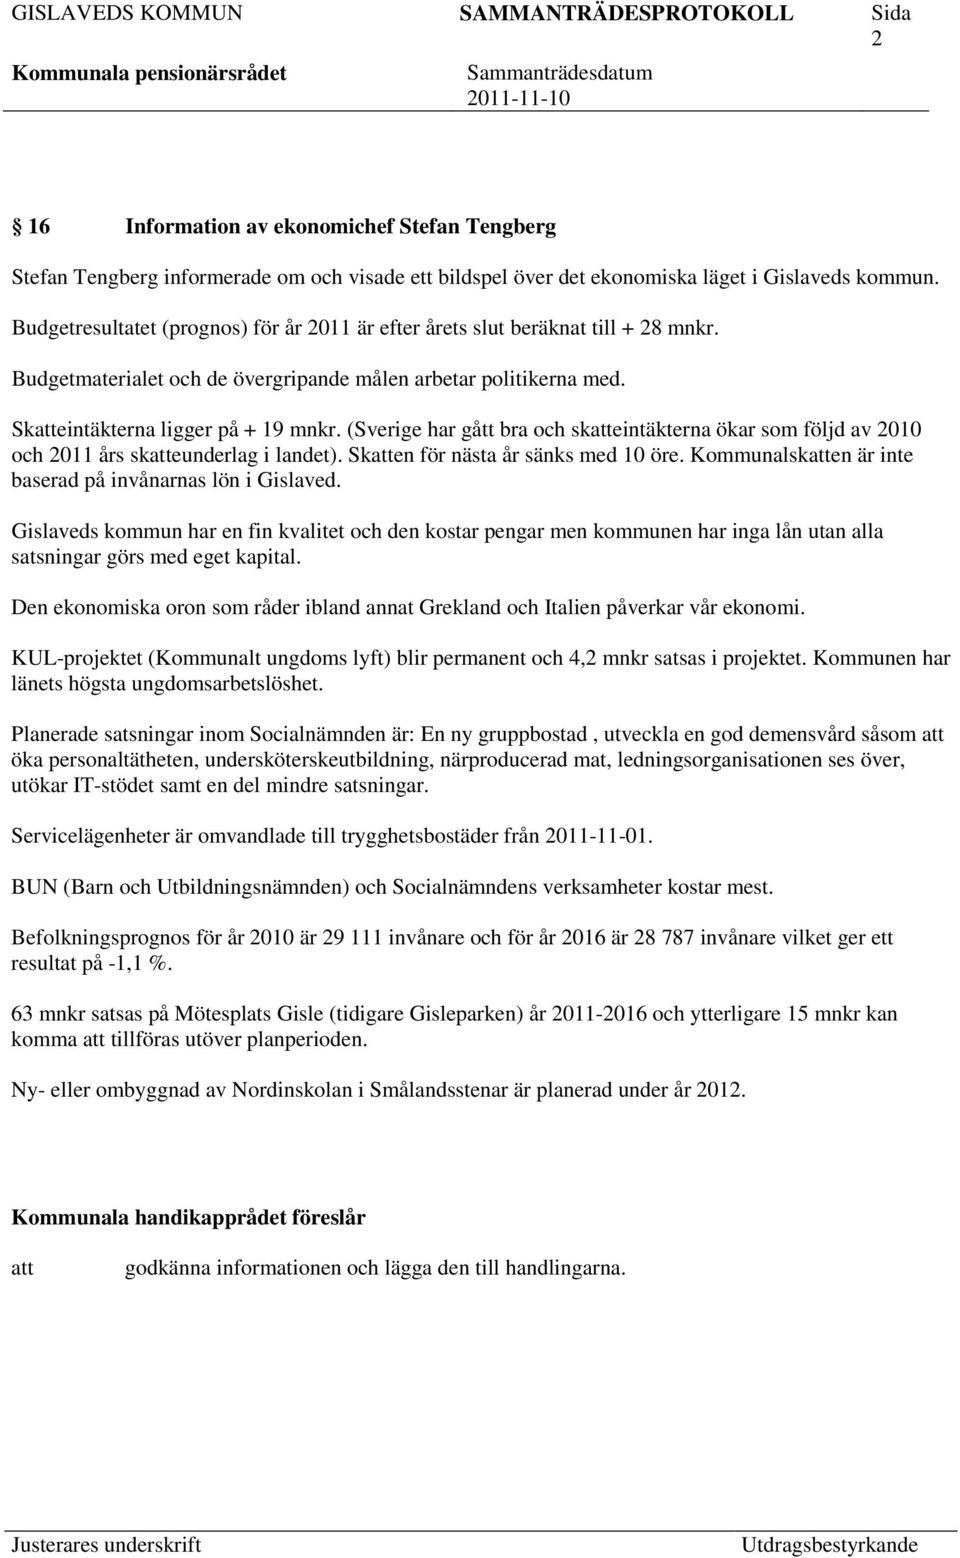 (Sverige har gått bra och skeintäkterna ökar som följd av 2010 och 2011 års skeunderlag i landet). Sken för nästa år sänks med 10 öre. Kommunalsken är inte baserad på invånarnas lön i Gislaved.